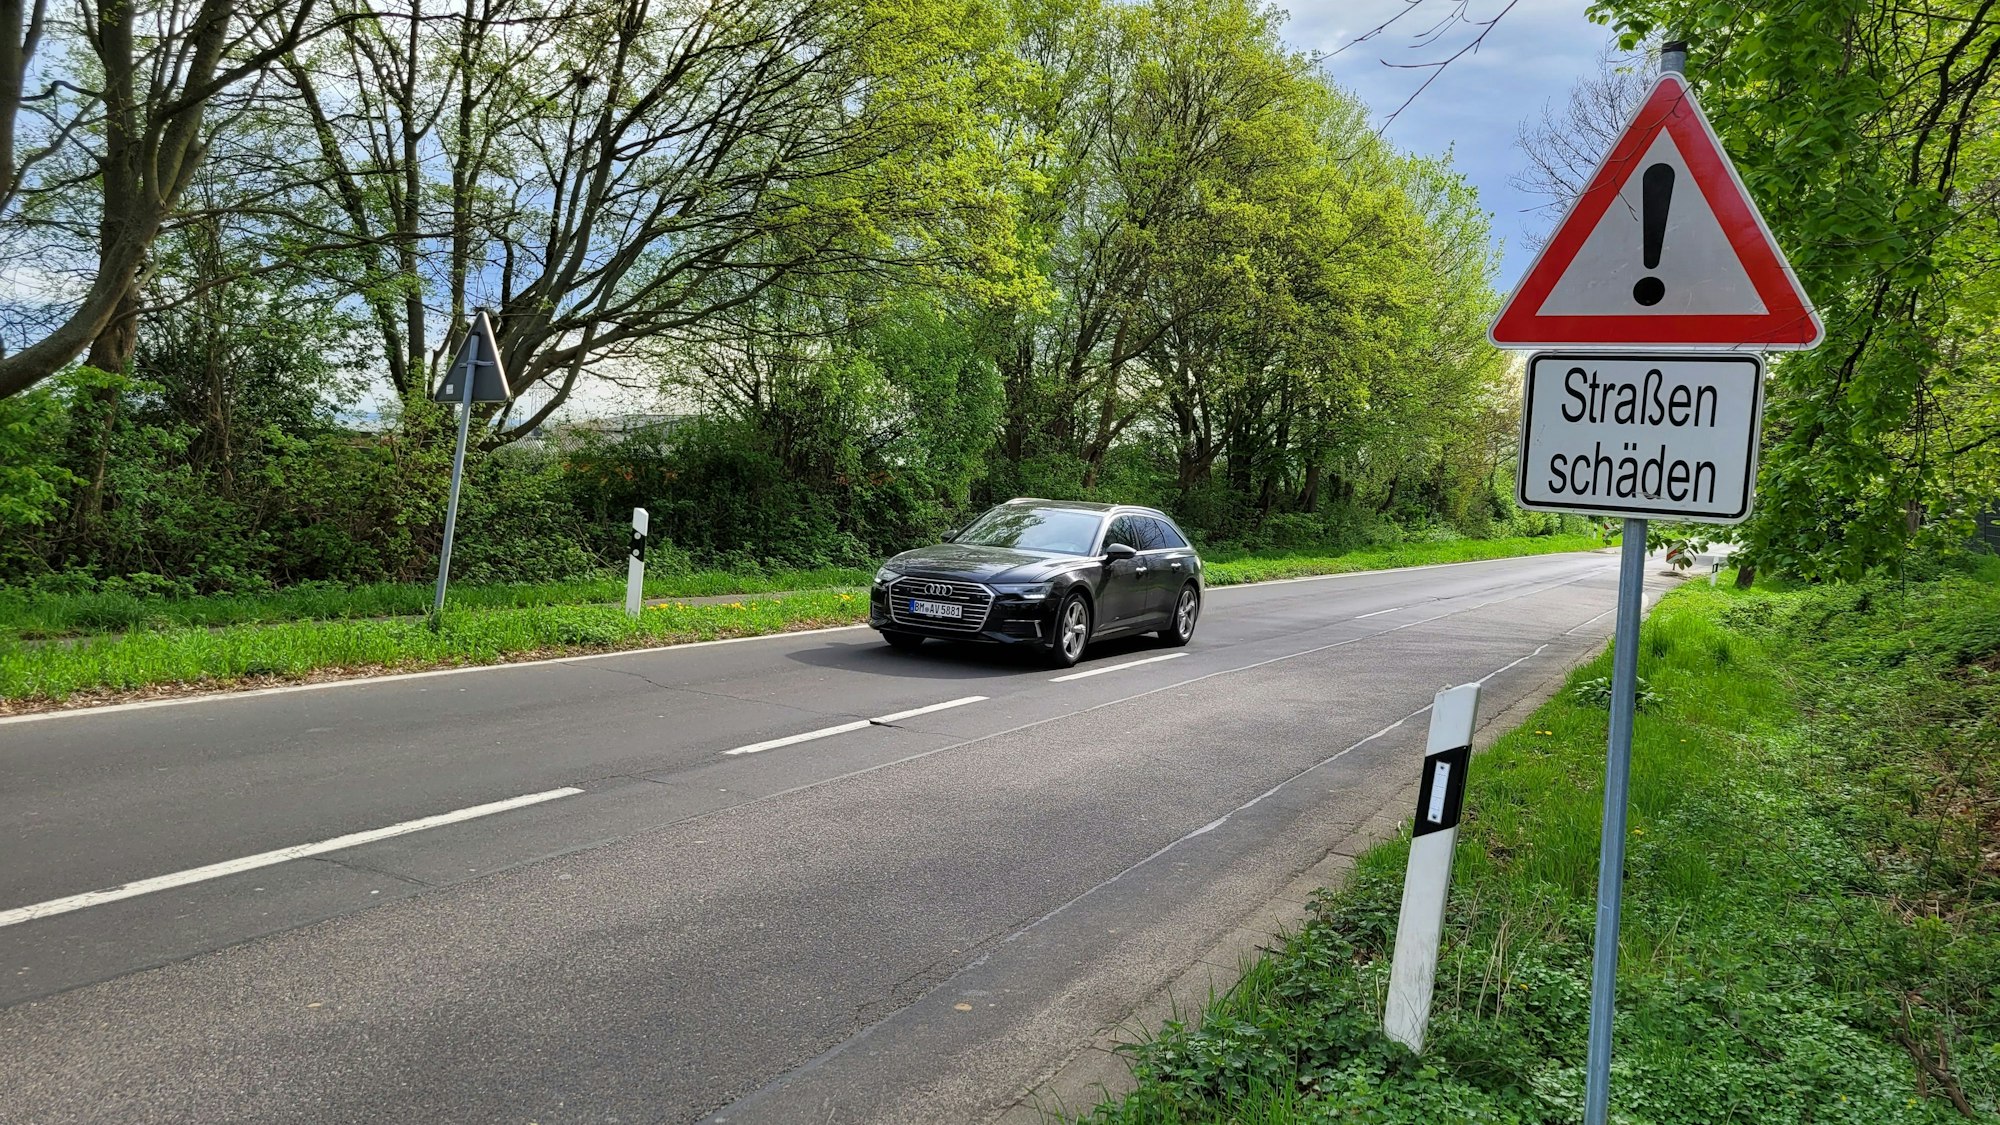 Eine zweispurige Straße, ein Auto auf dem linken Fahrstreifen, rechts ein Hinweisschild mit dem Schriftzug „Straßenschäden“.